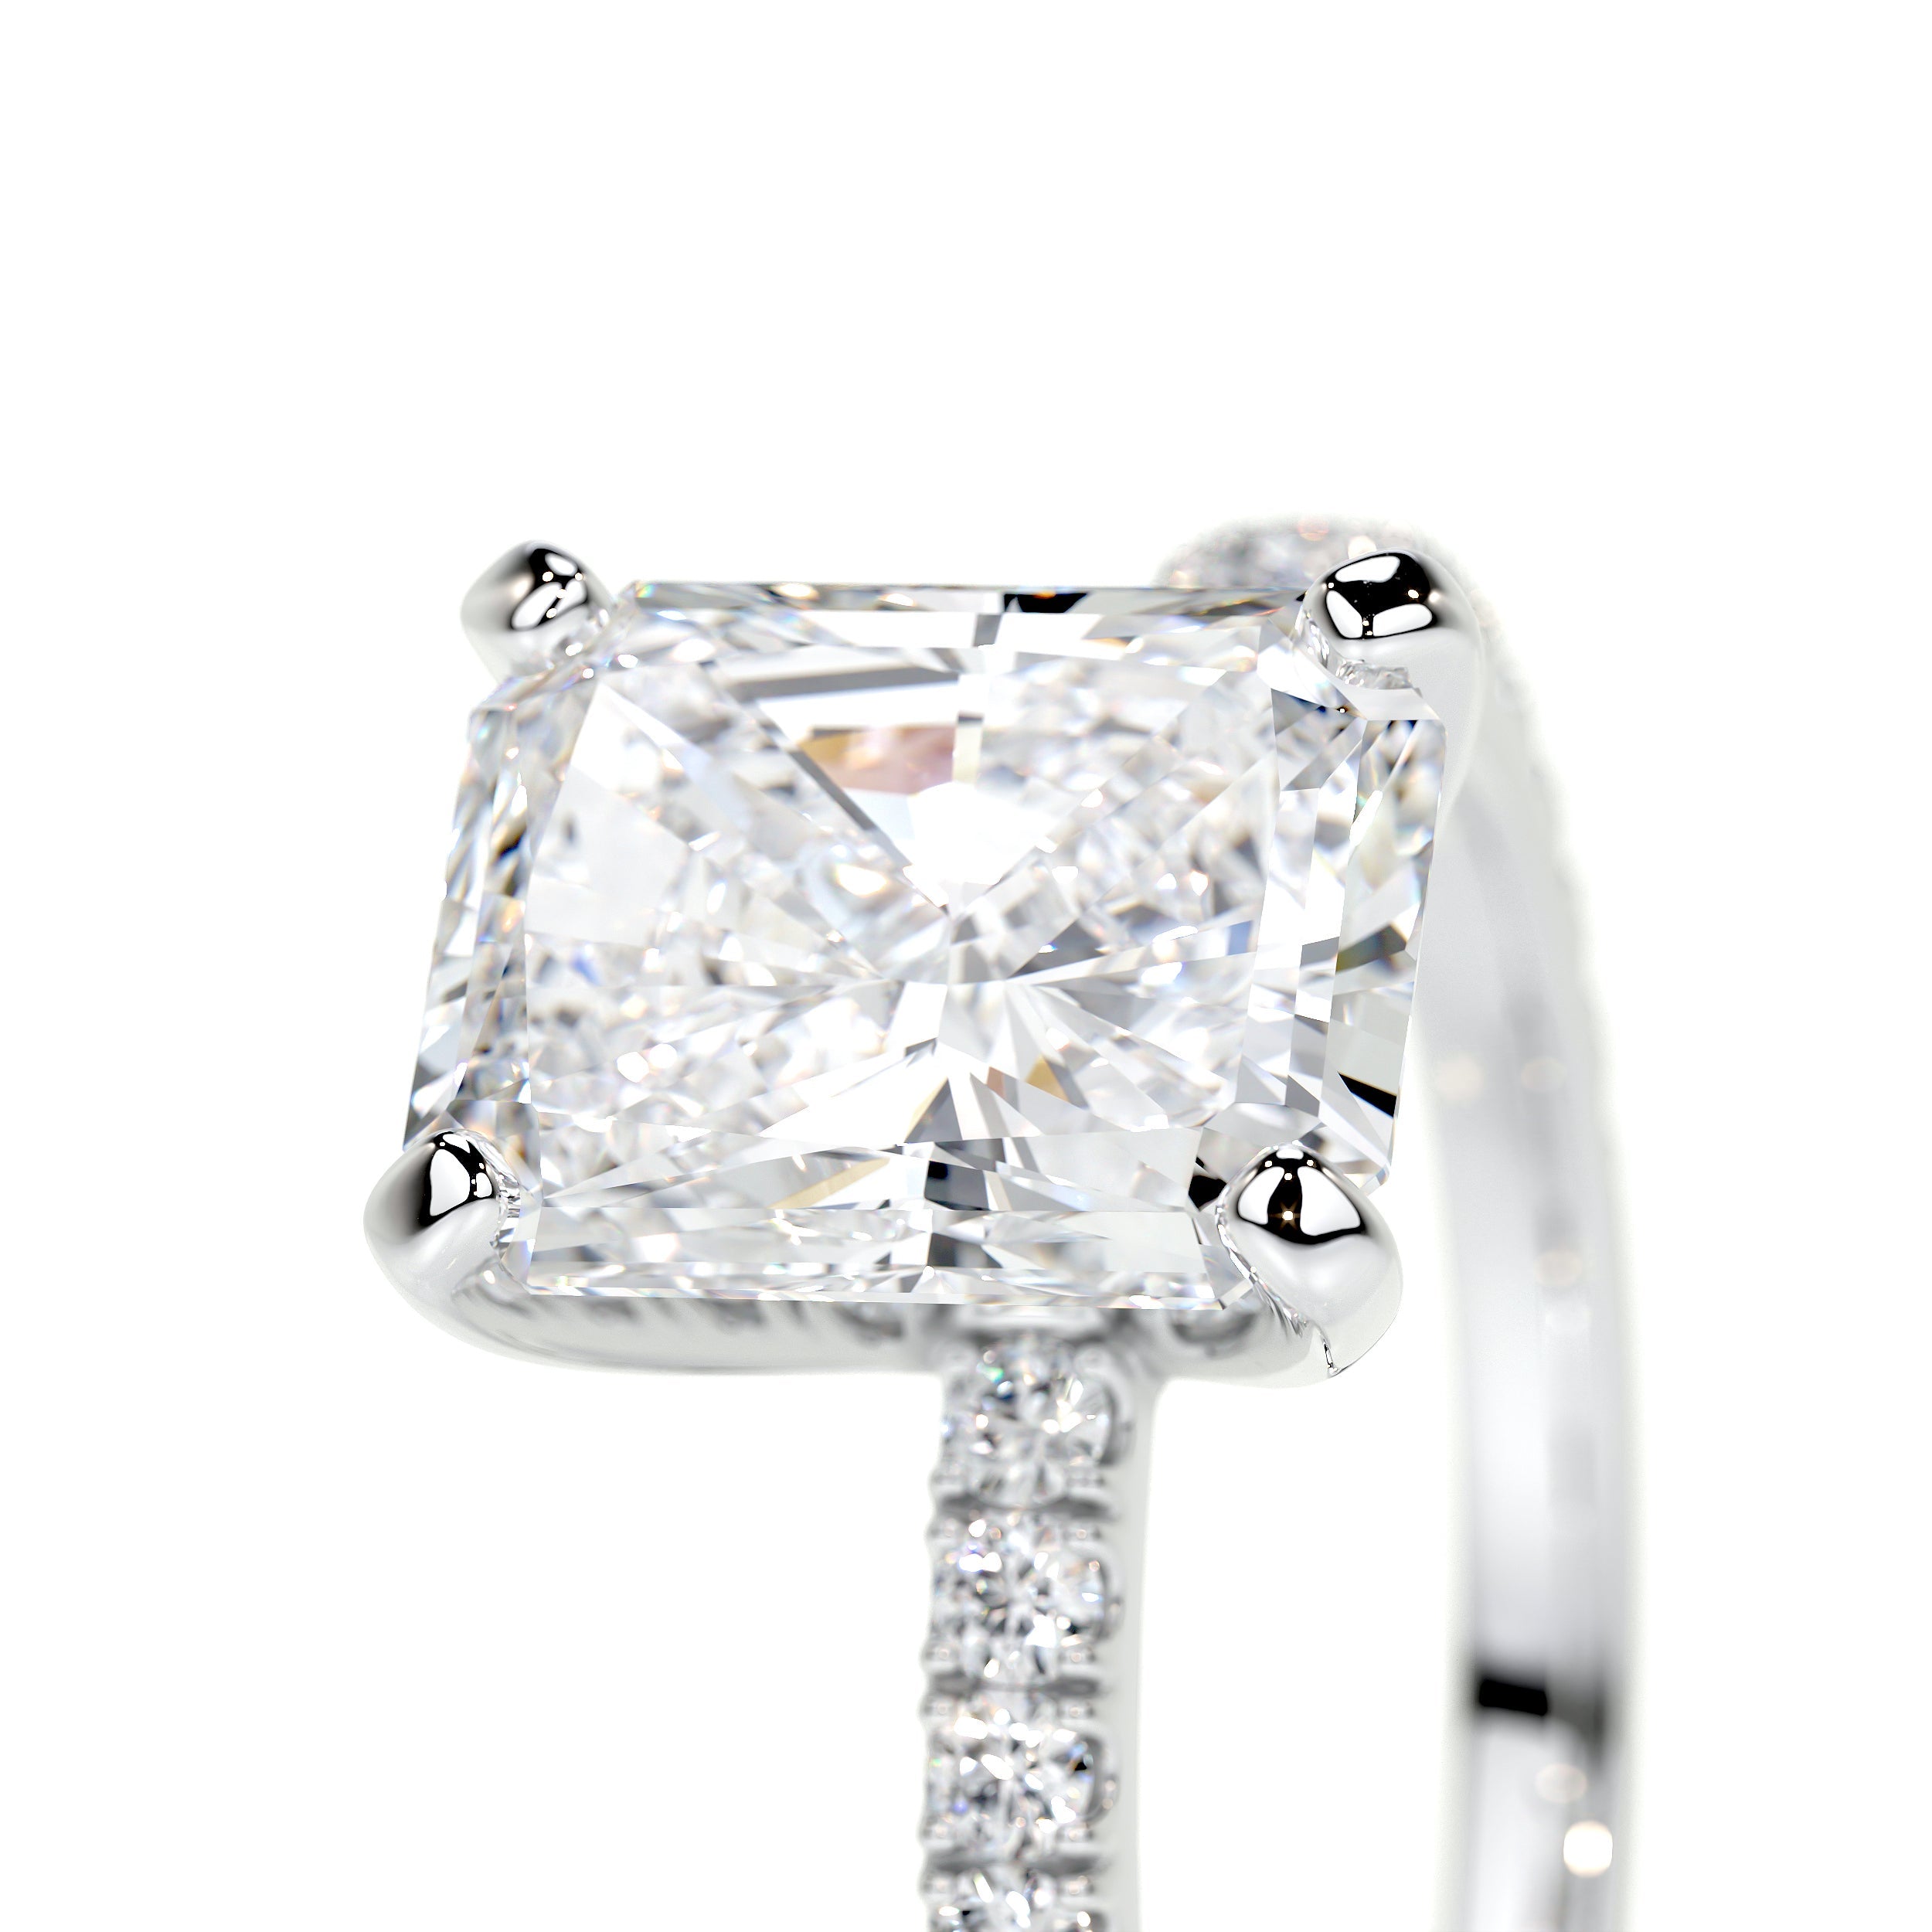 Audrey Lab Grown Diamond Ring   (2.3 Carat) -14K White Gold